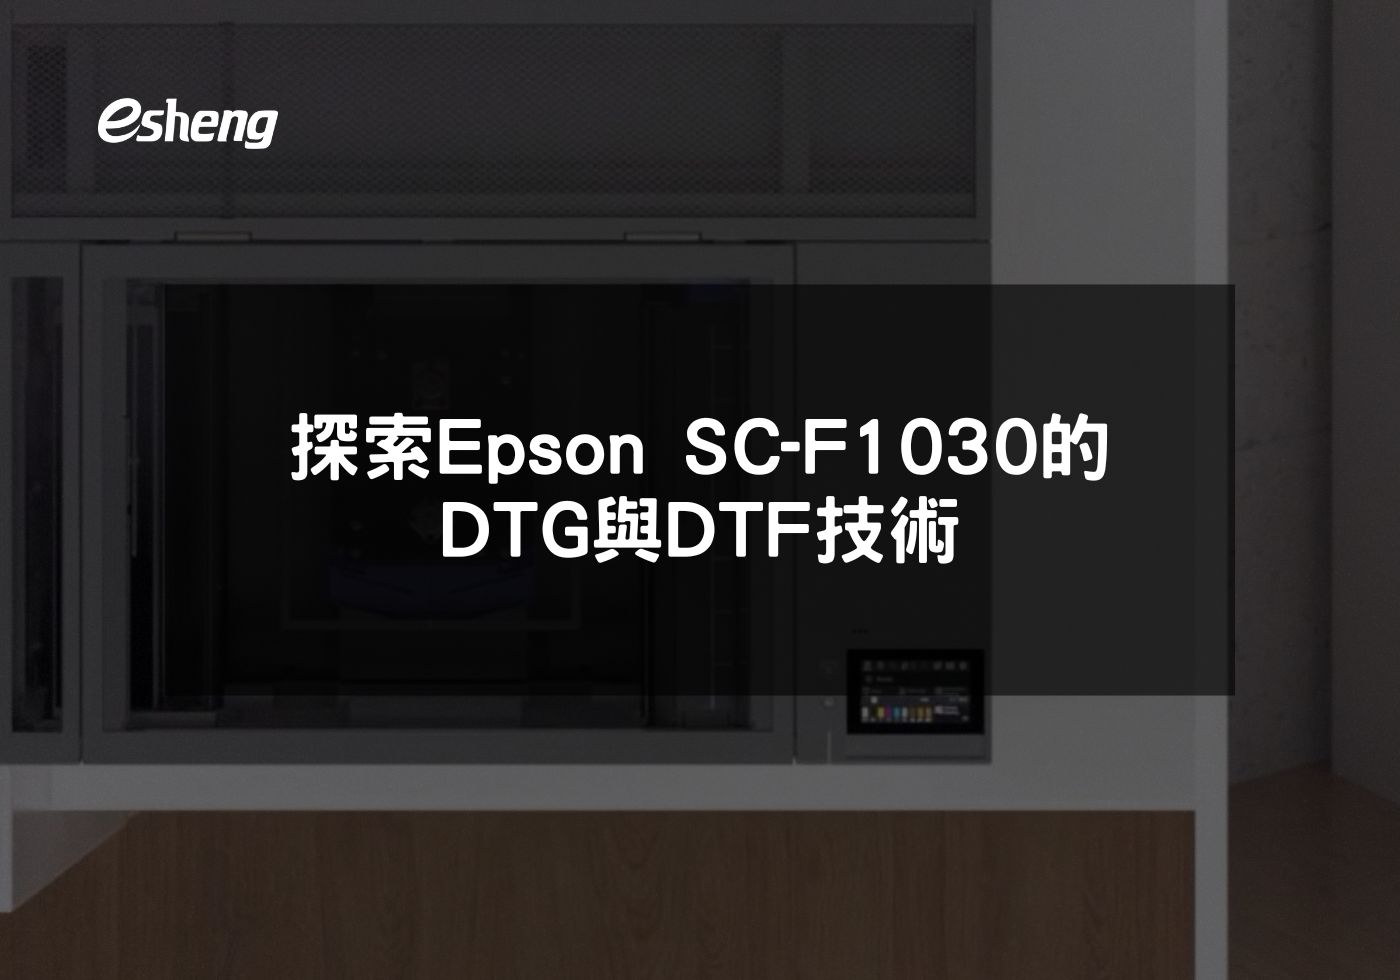 創新印刷 探索Epson SC-F1030的DTG與DTF技術